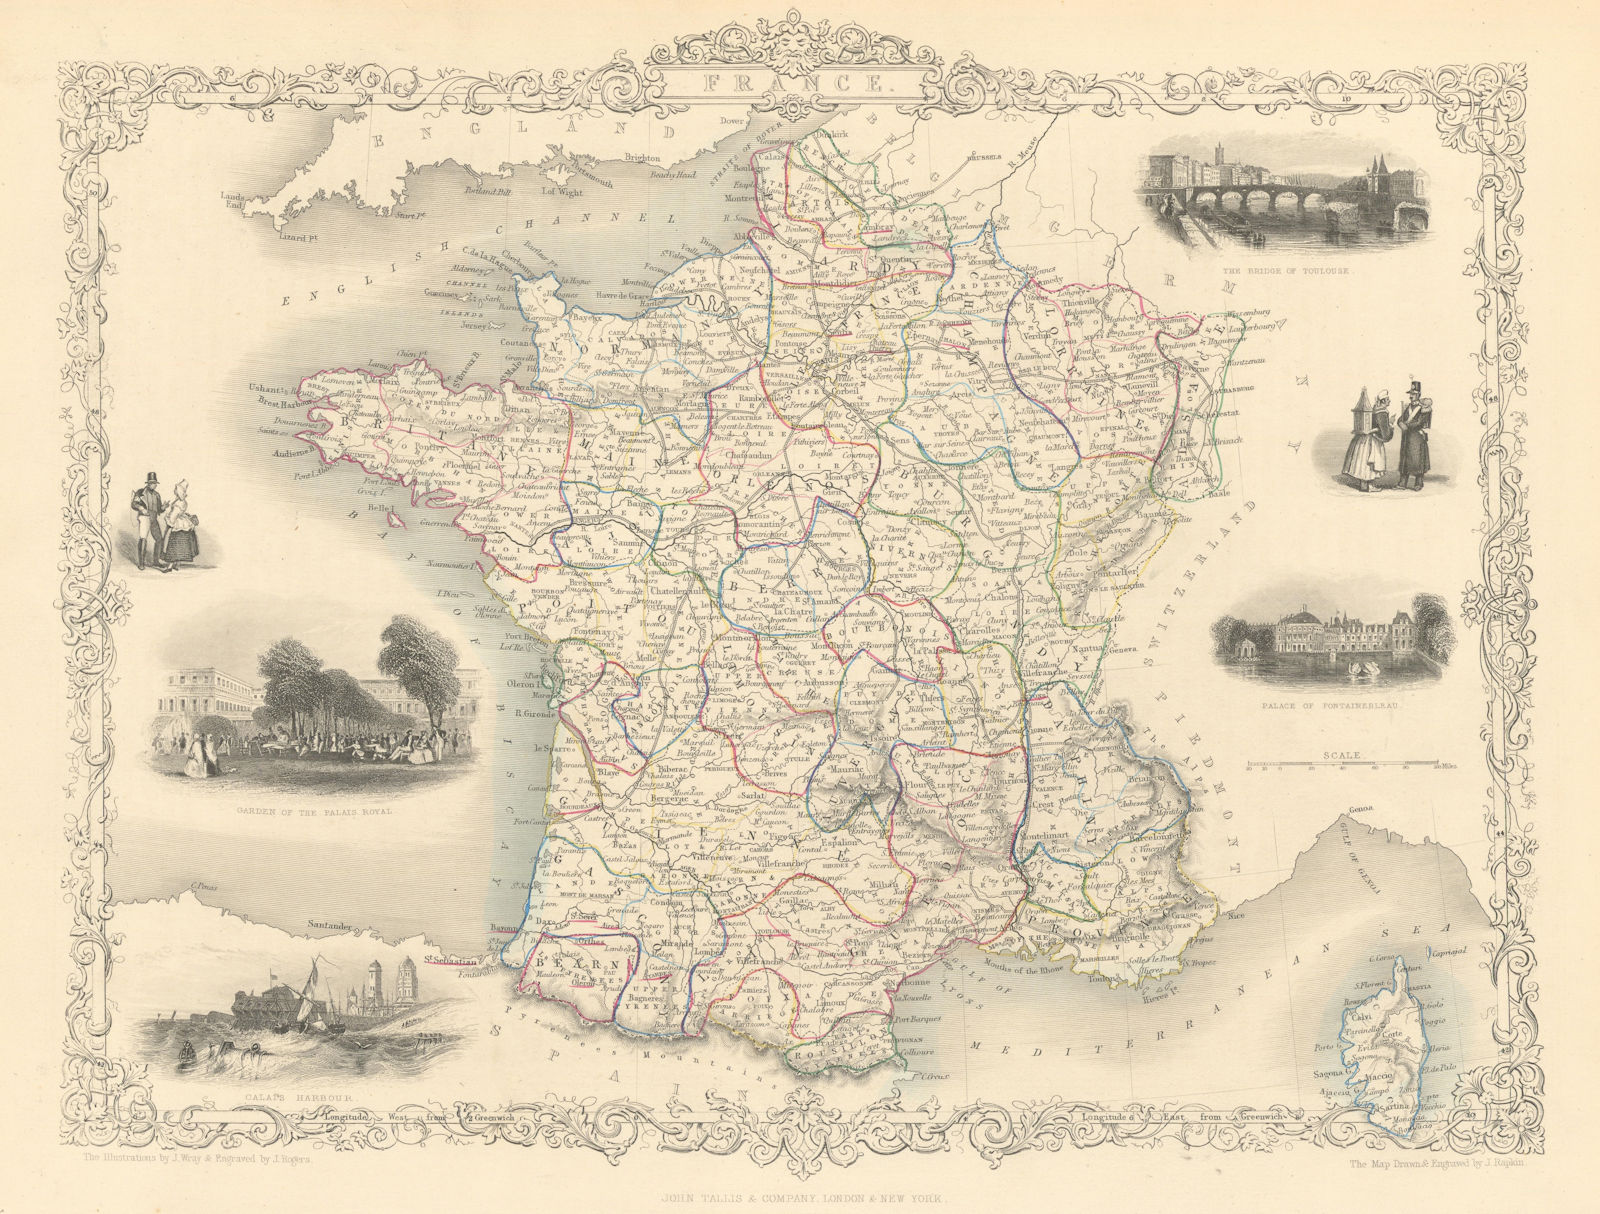 FRANCE in Provinces wiithout Comté de Nice & Savoy/Savoie RAPKIN/TALLIS 1851 map